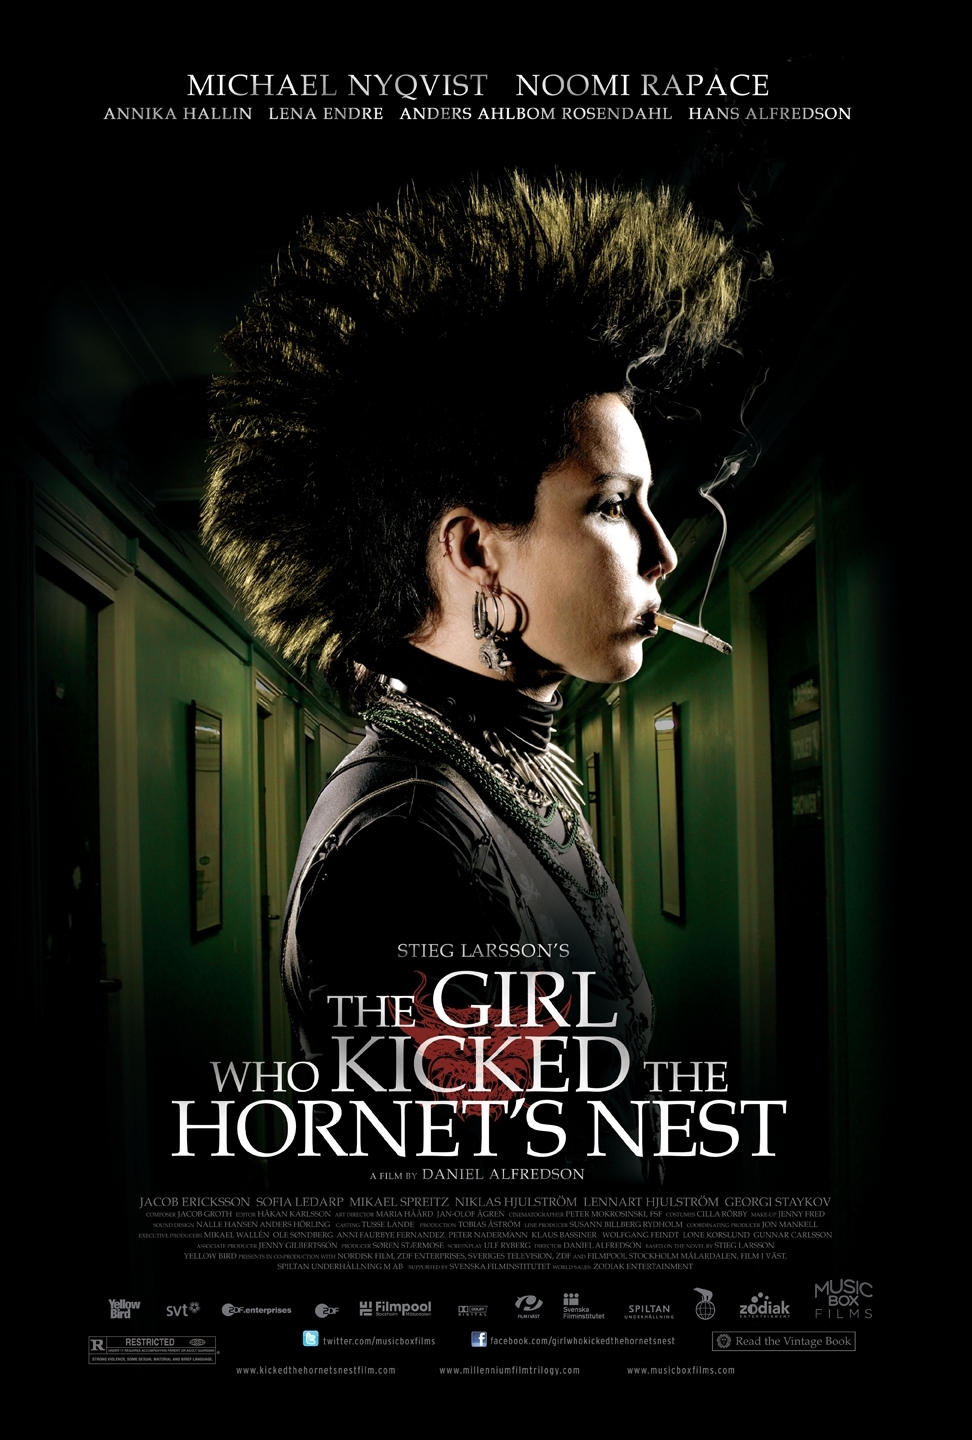 ดูหนังออนไลน์ฟรี The Girl Who Kicked The Hornet Nest 2009 เว็บดูหนังใหม่ออนไลน์